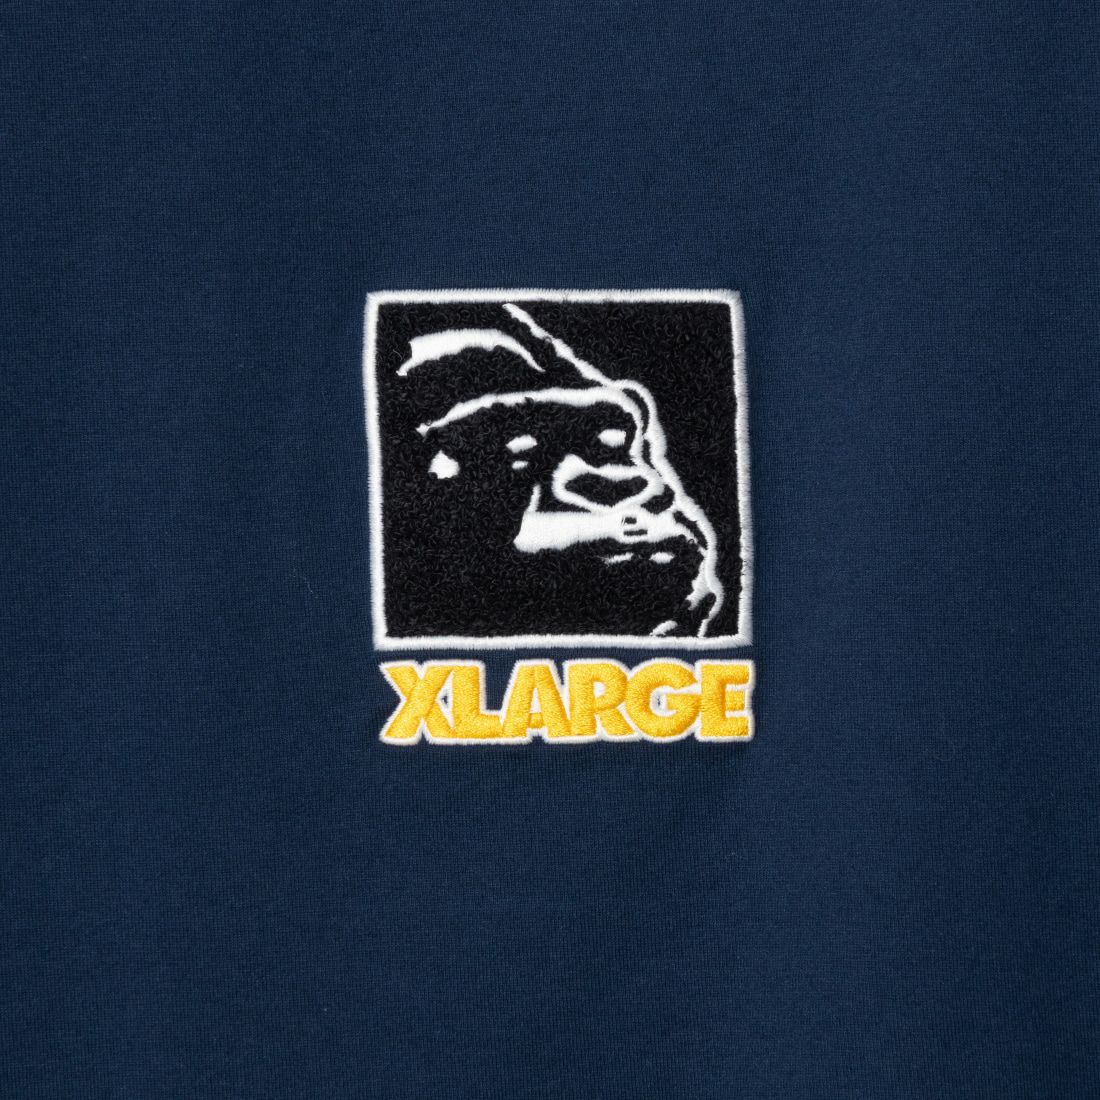 XLARGE [エクストララージ] スクエア刺繍ロゴTシャツ [101241011023] NAVY